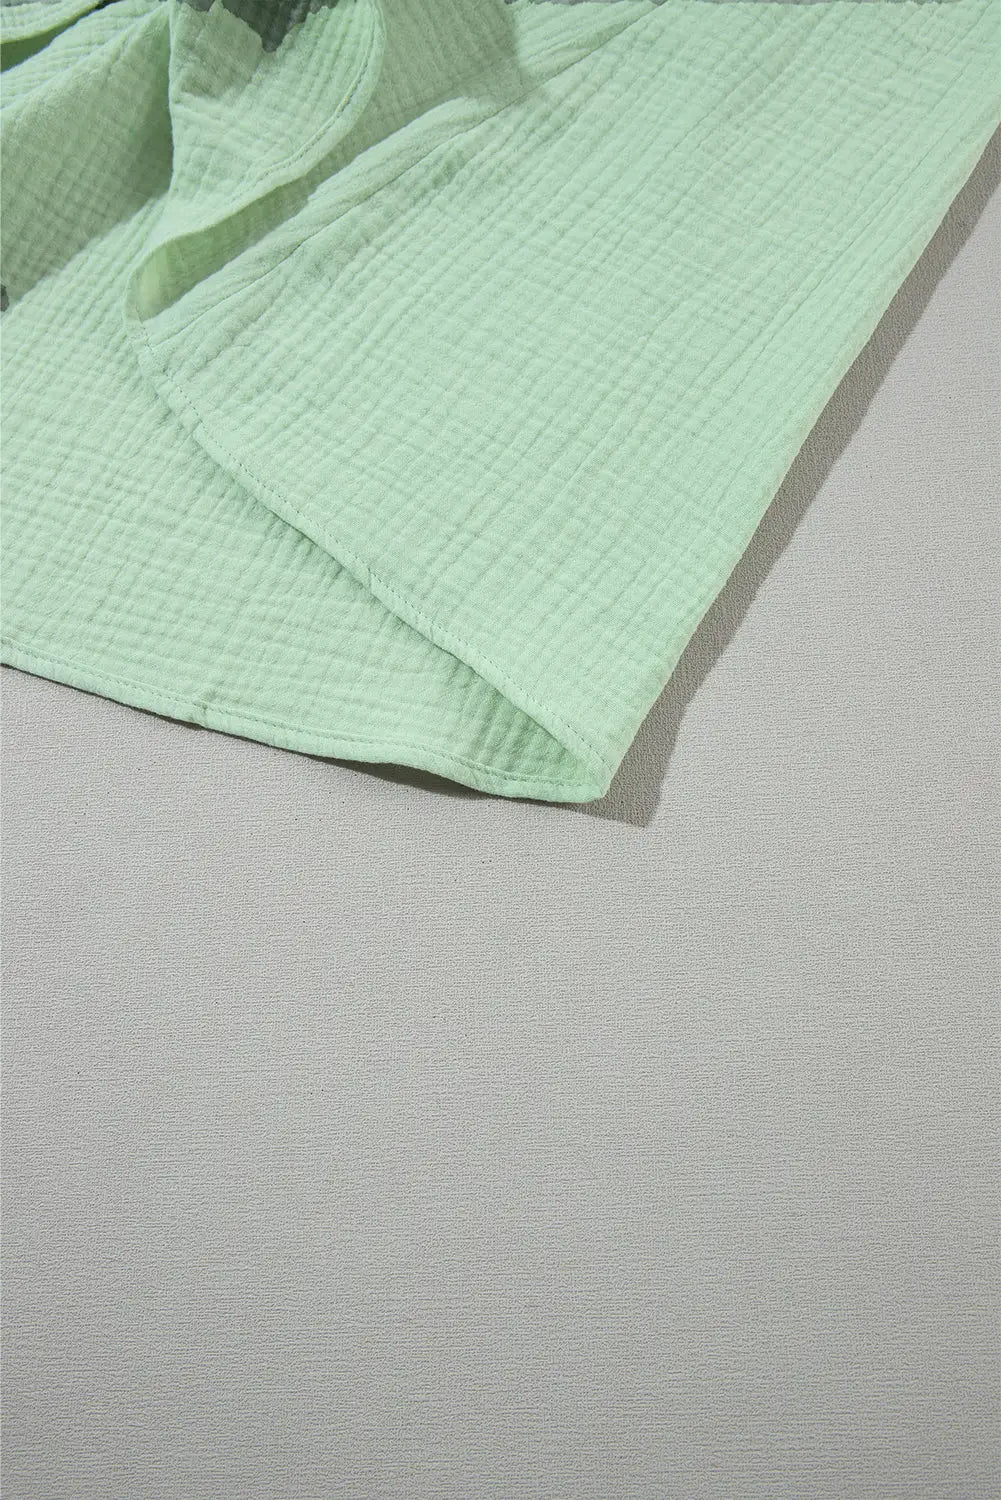 Green smoked flounce sleeve textured empire waist maxi dress - dresses